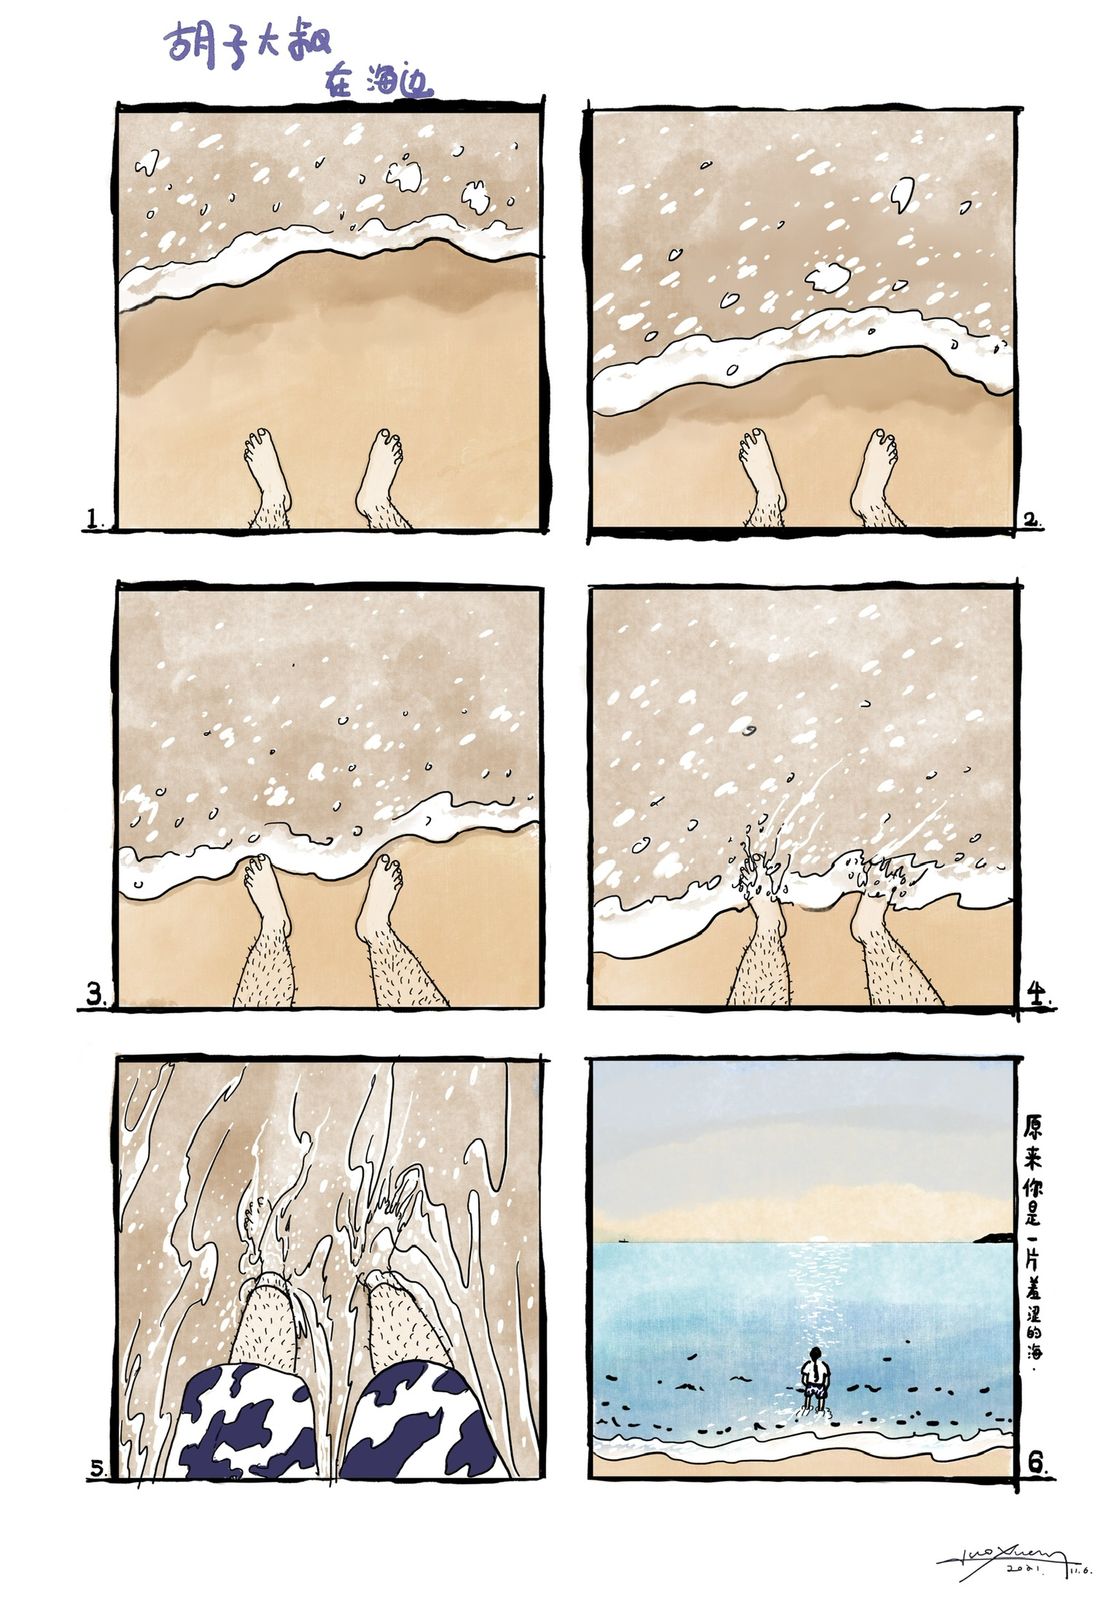 多格漫画《胡子大叔在海边》插画图片壁纸